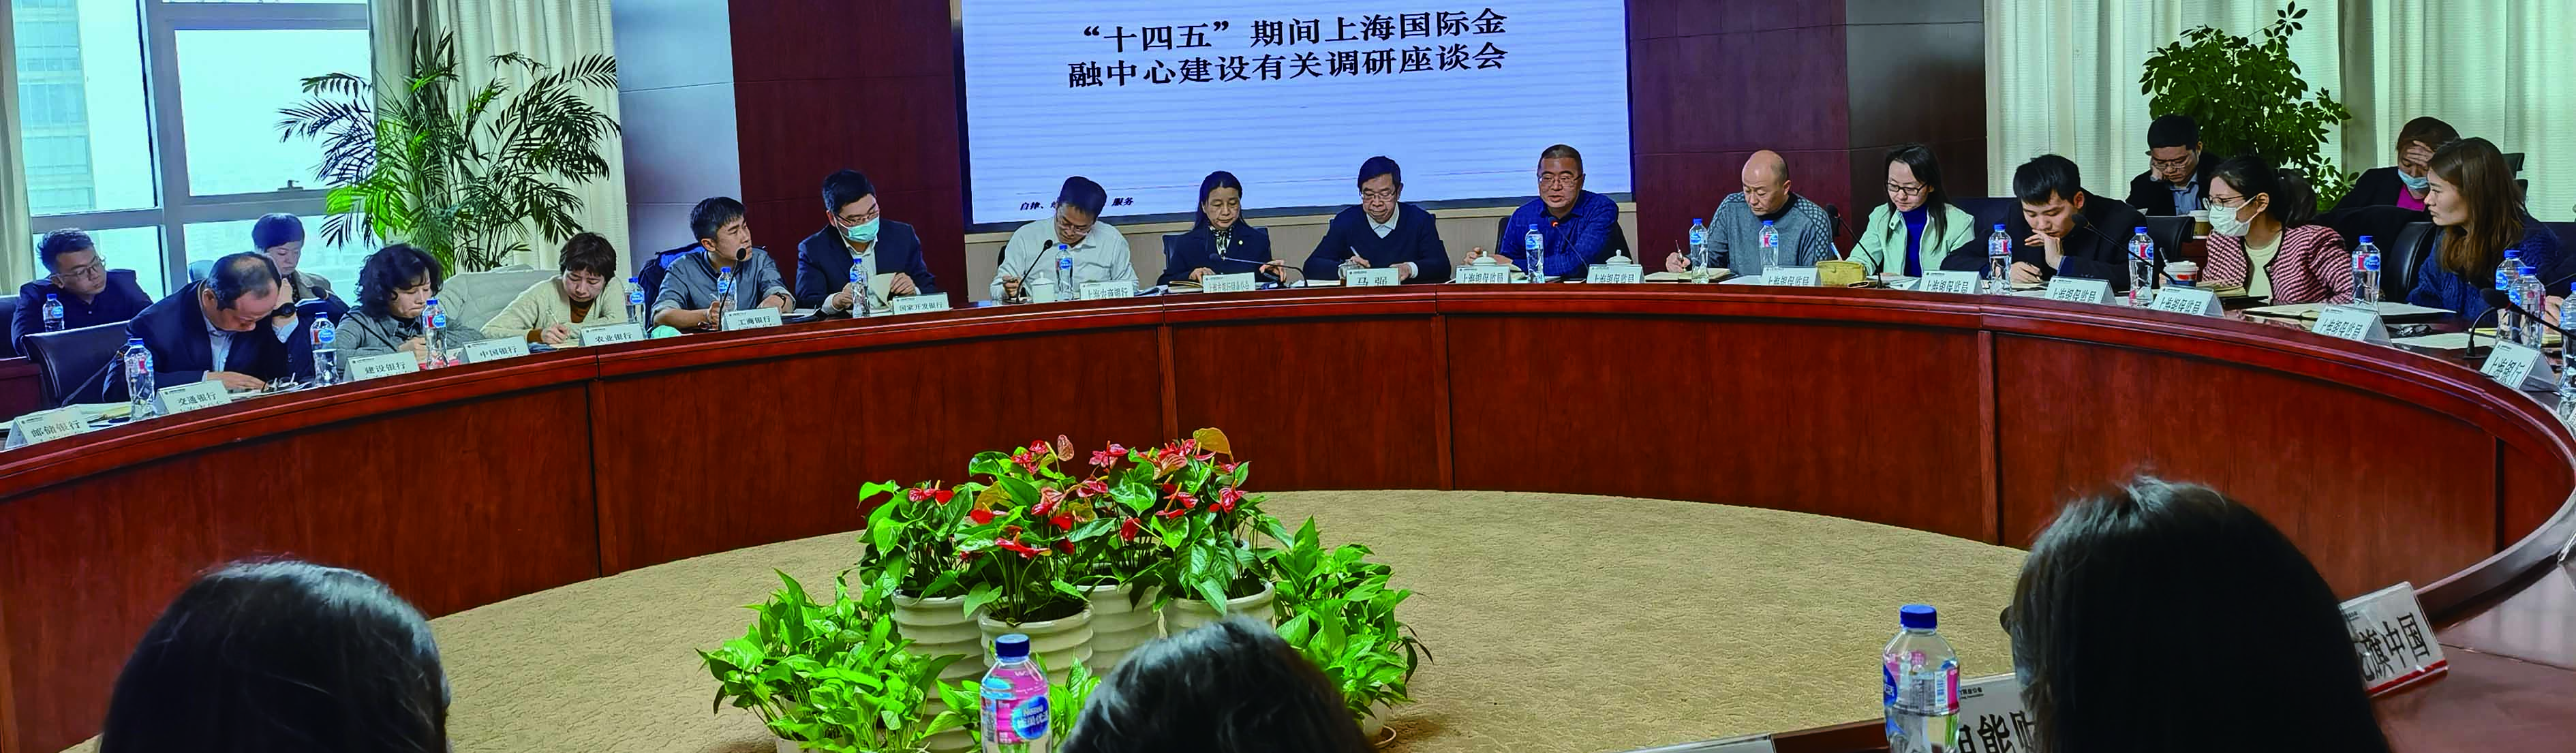 公会召开“十四五”期间上海国际金融中心建设有关调研座谈会